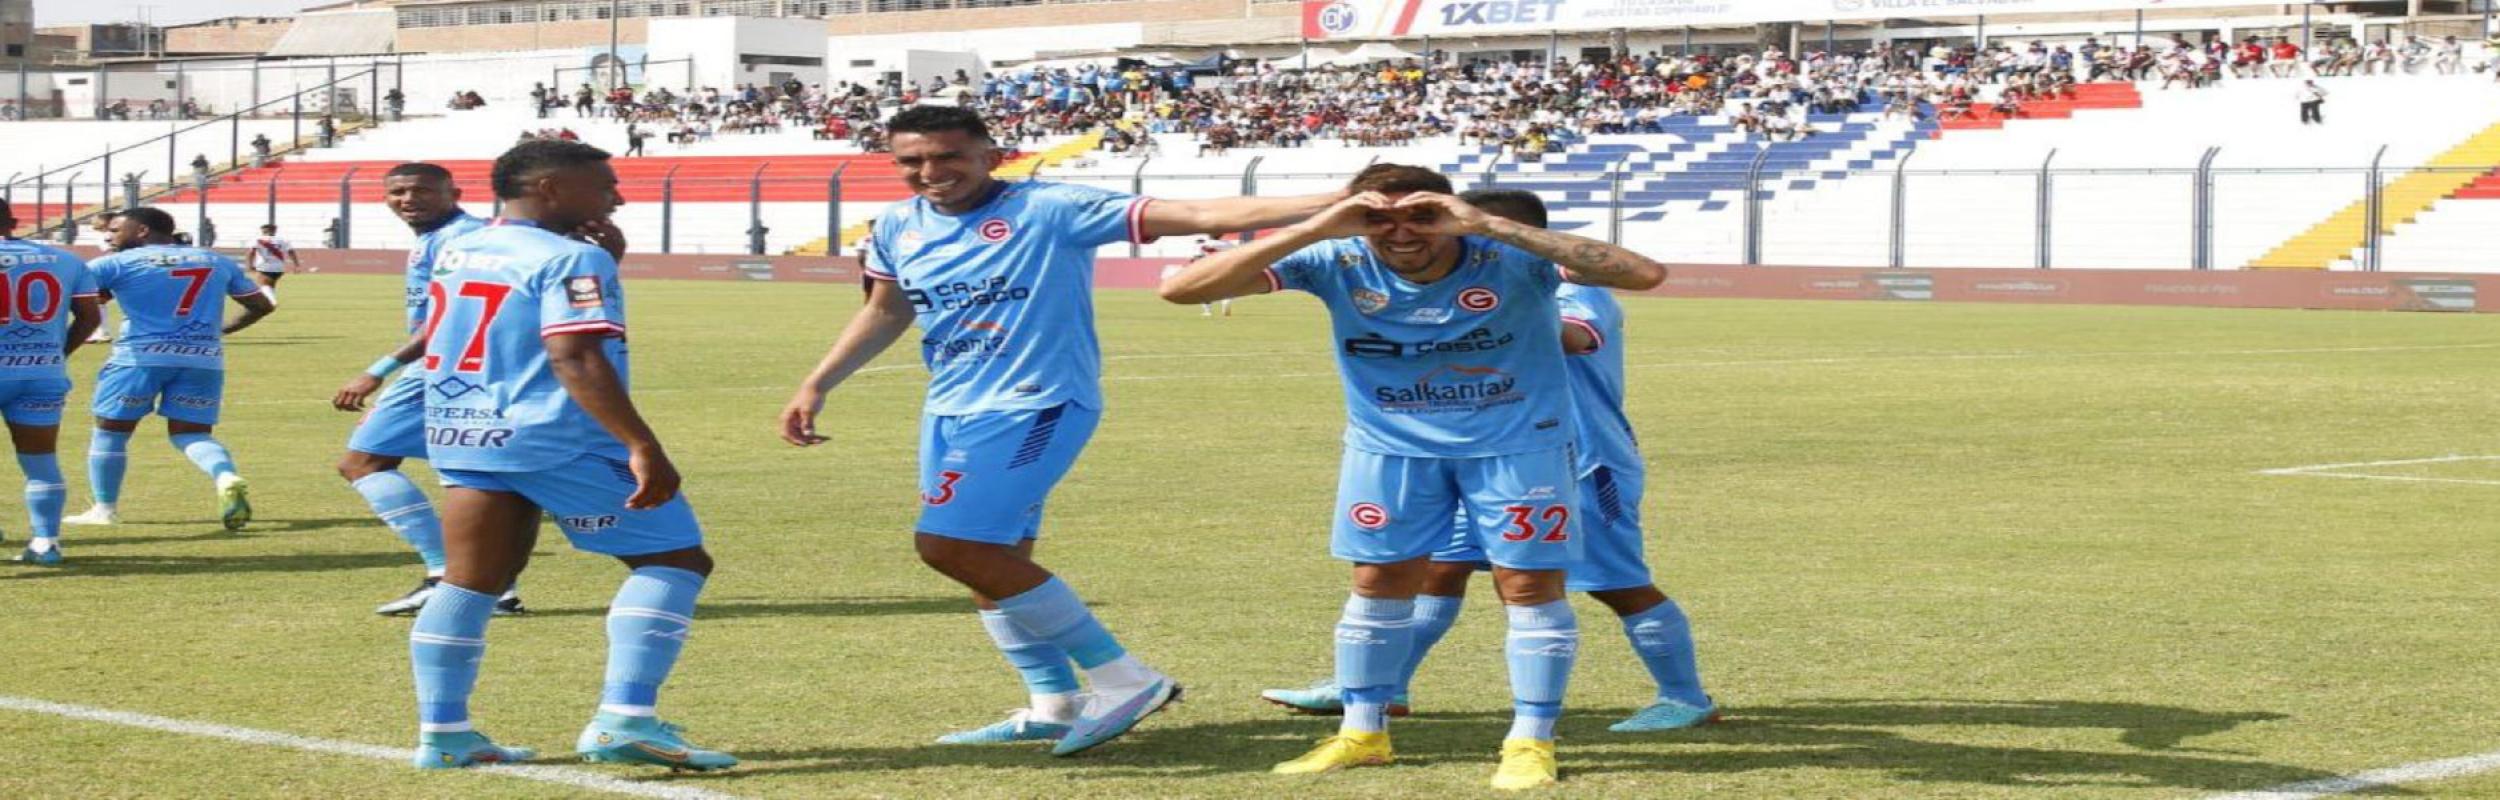 Ντεπορτίβο Γκαρσιλάσο, Deportivo Garcilaso